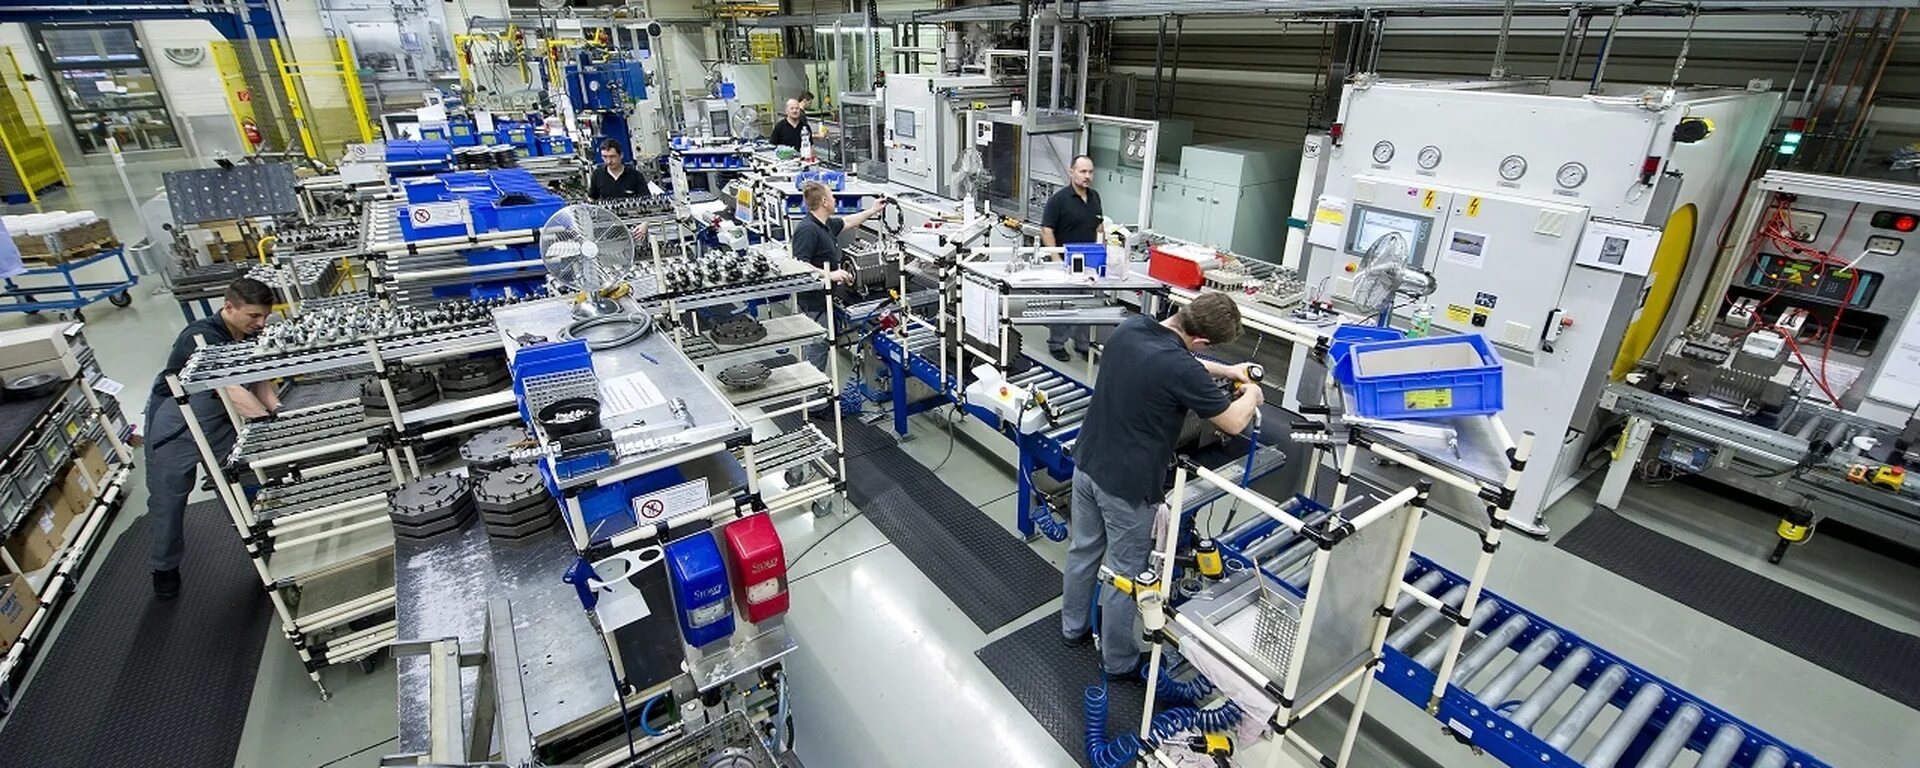 Производственный ассортимент это. Автоматизация производства. Производственная линия. Оборудование на заводе. Автоматизация производственных процессов.